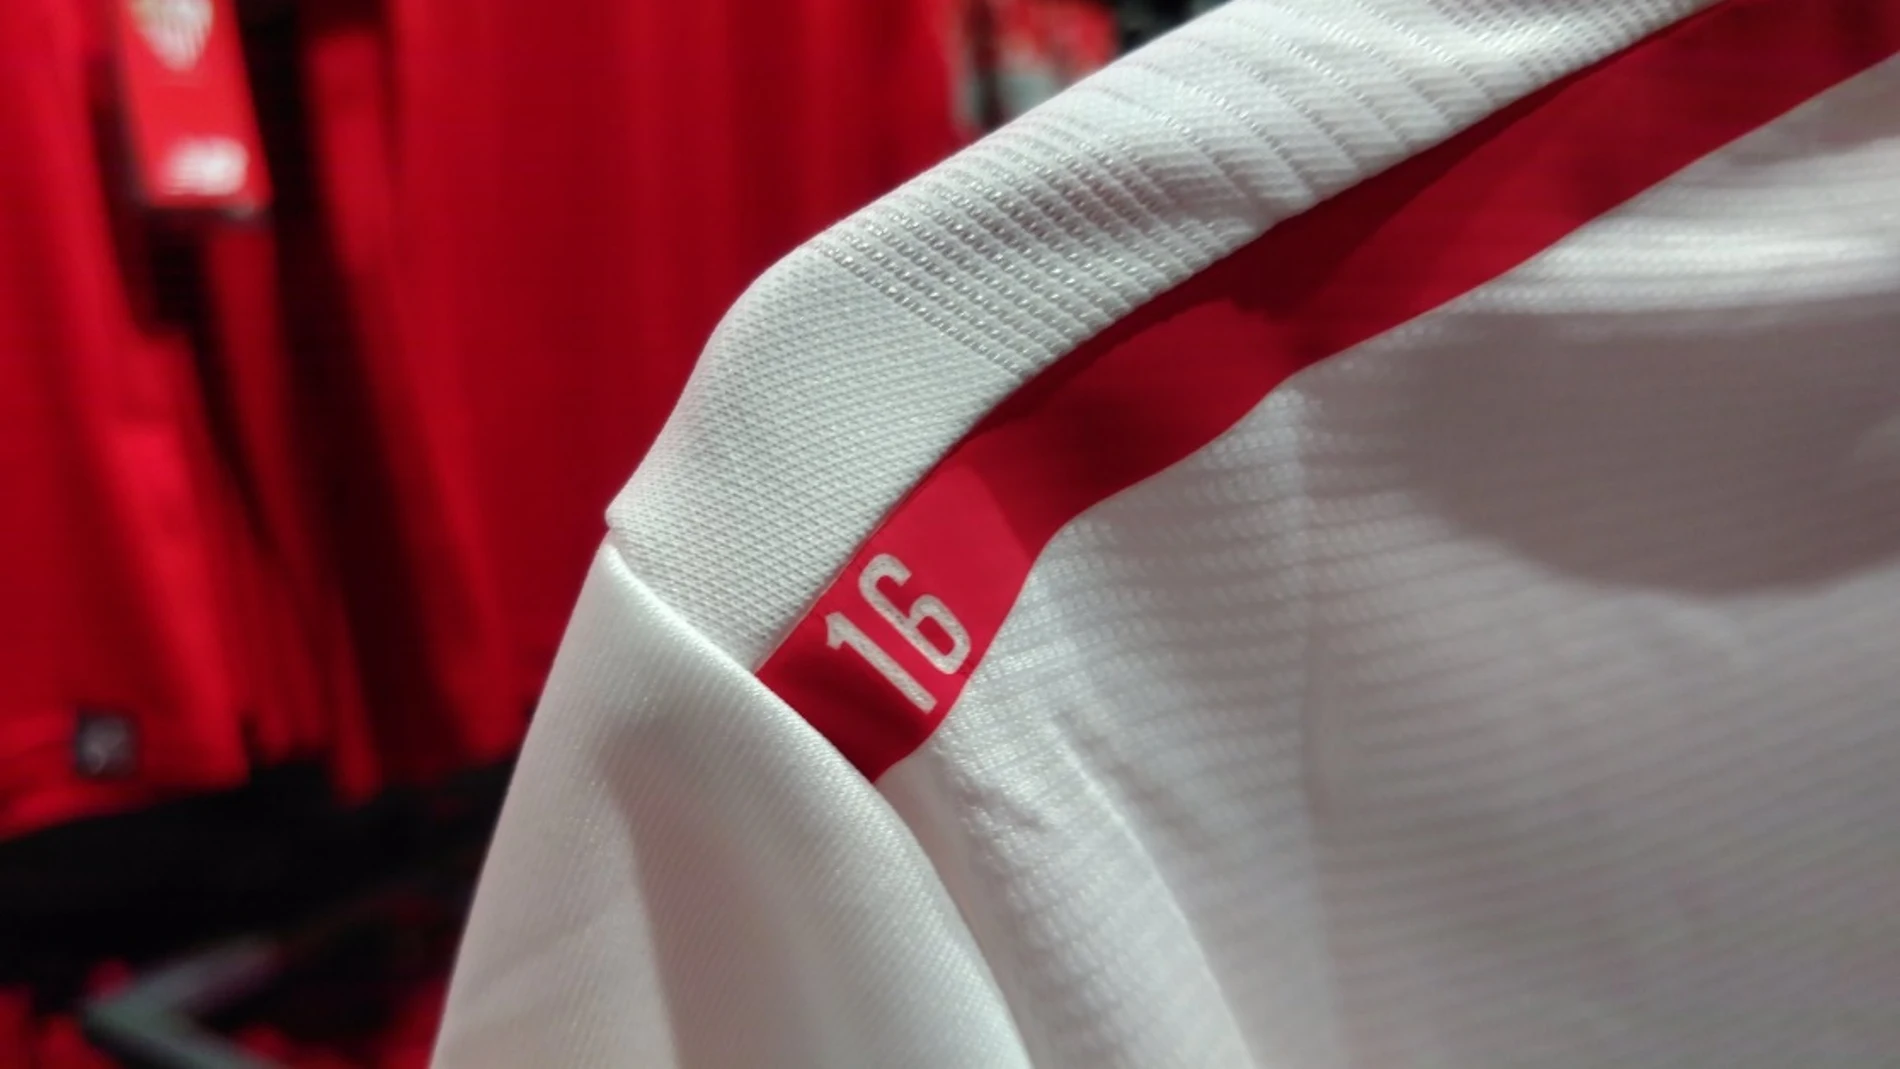 Detalle en recuerdo a Antonio Puerta en las nuevas camisetas del Sevilla